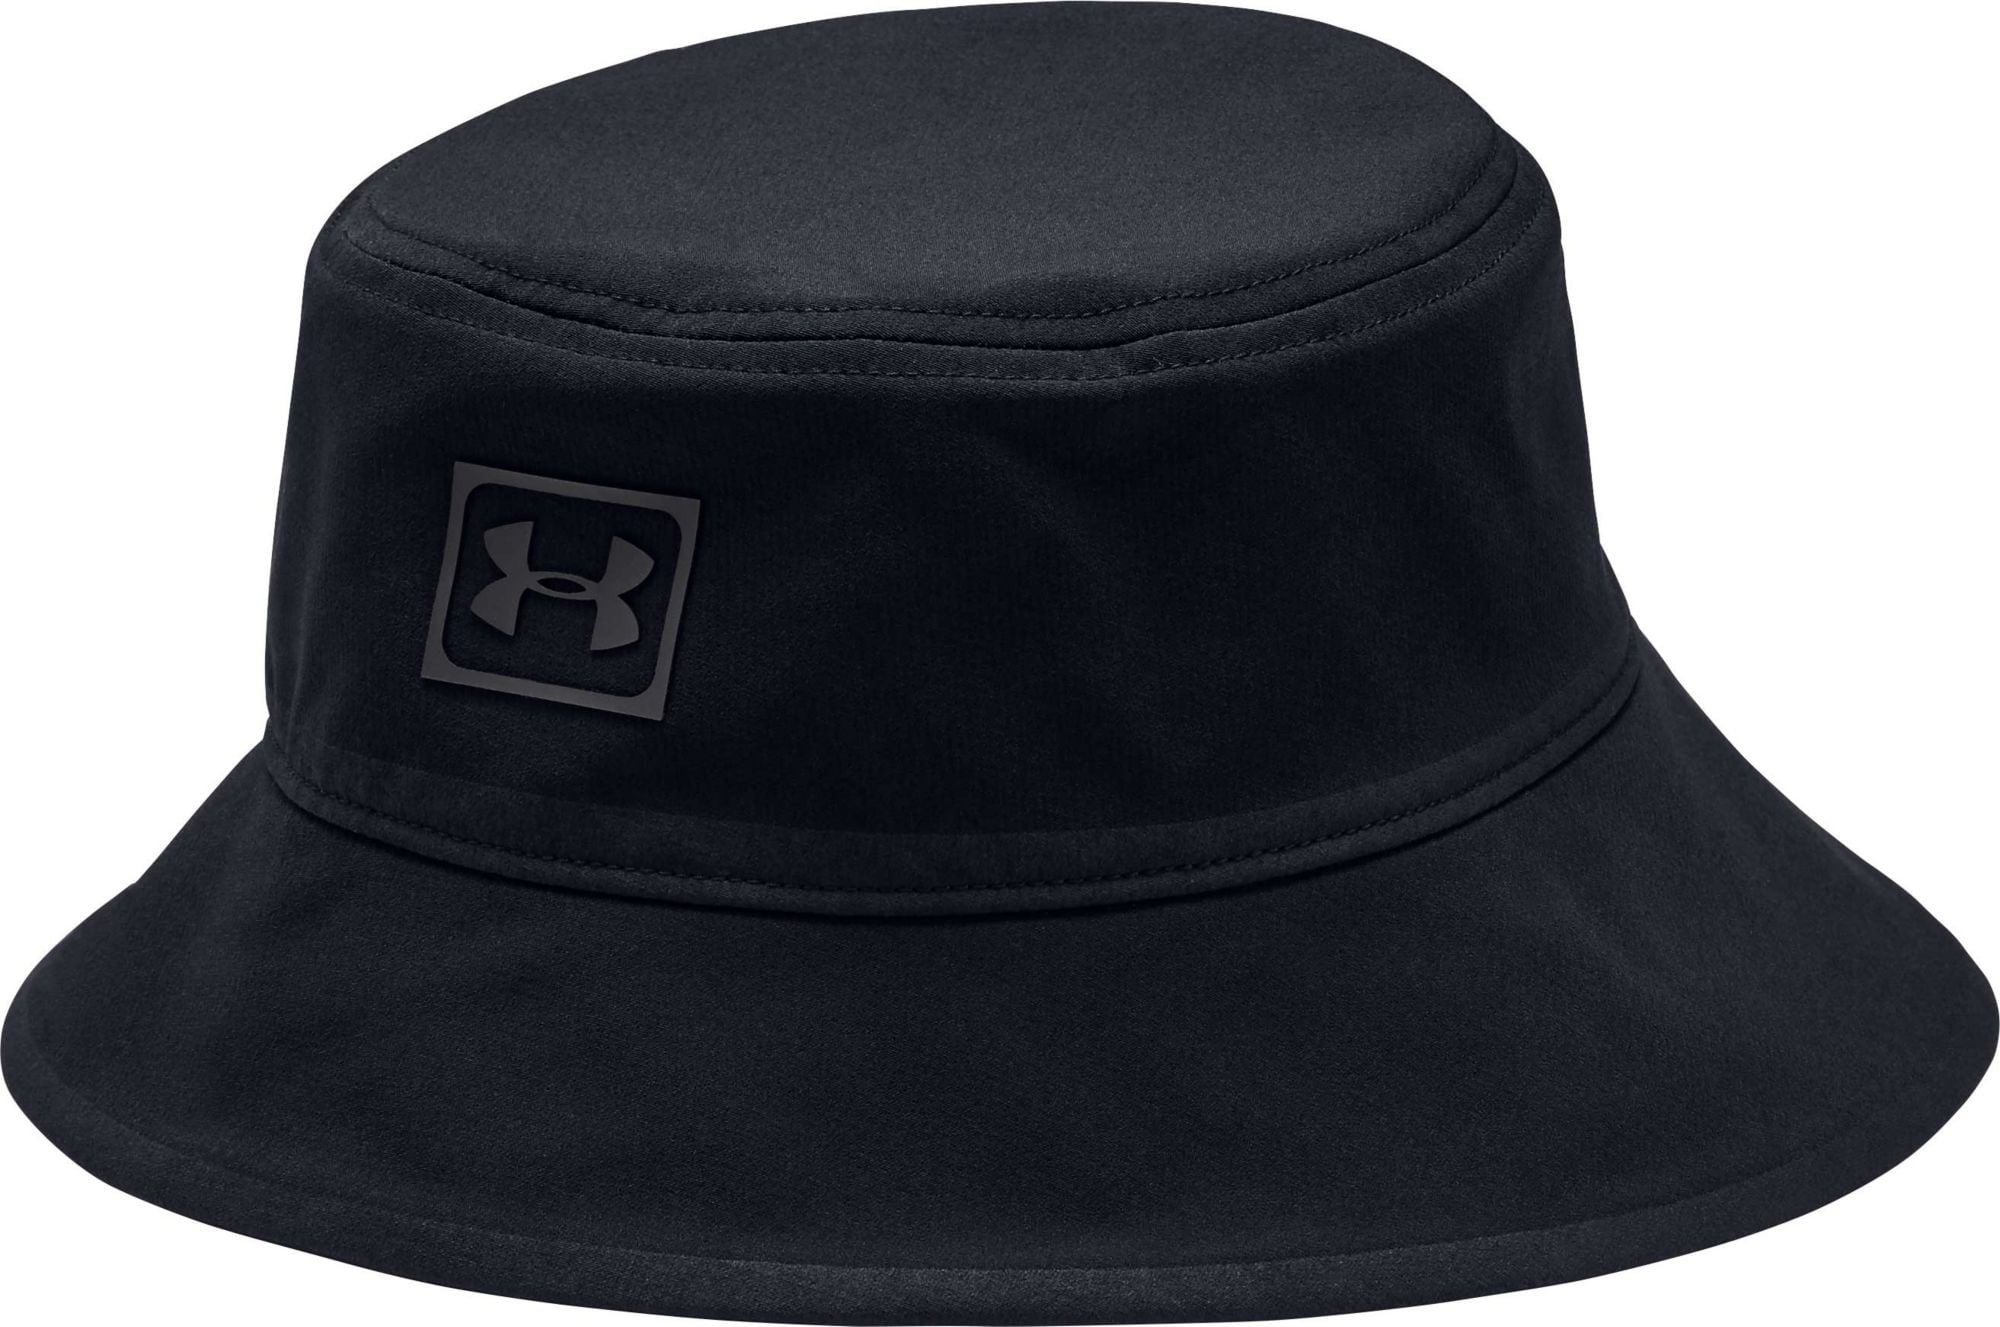 under armour golf hat